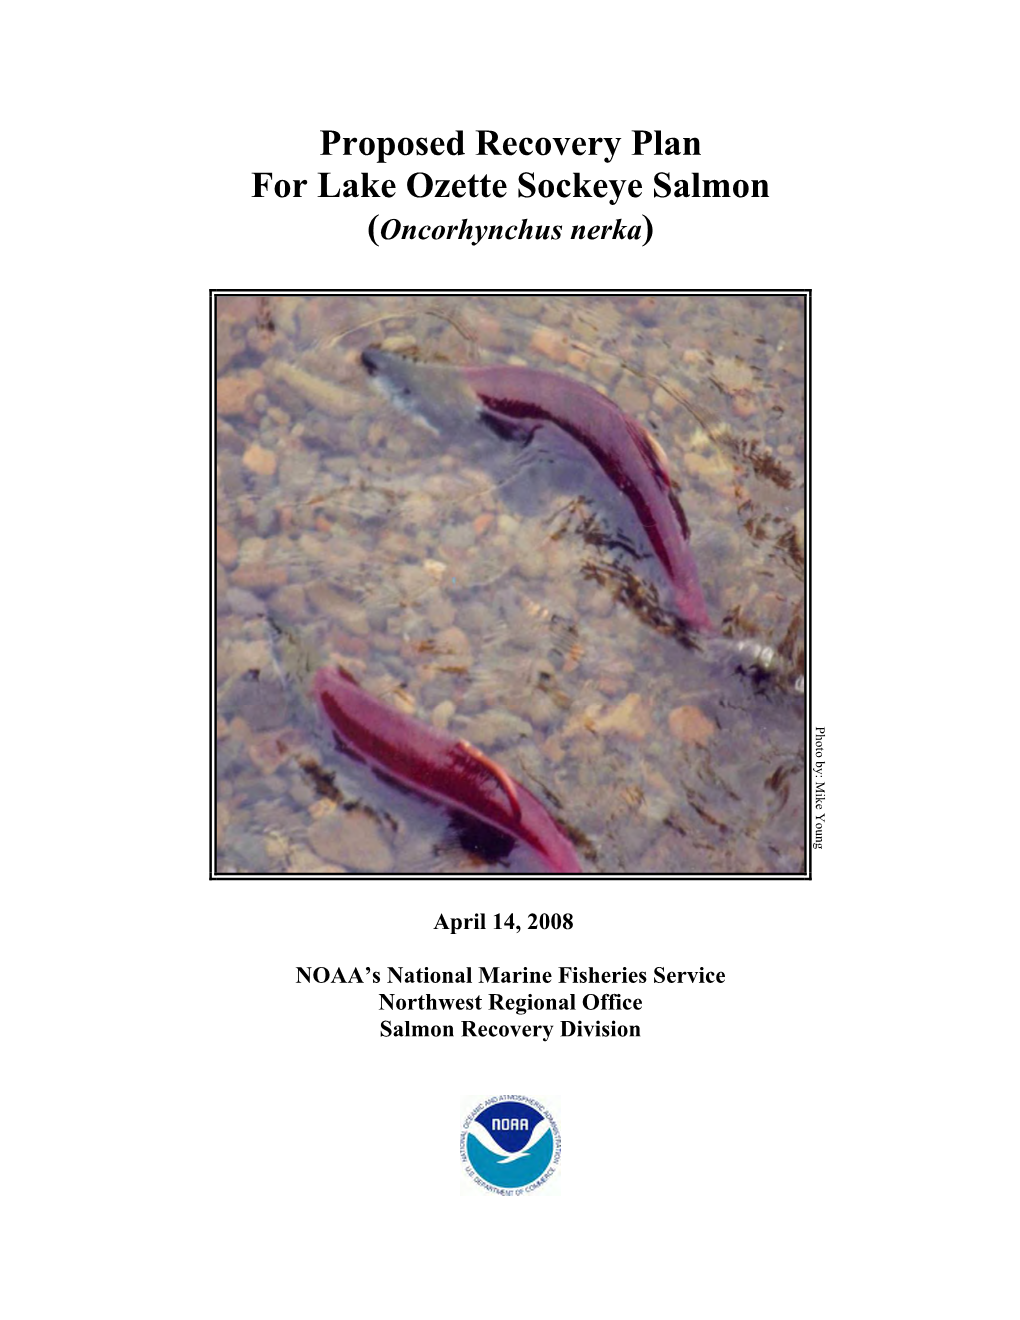 Proposed Lake Ozette Sockeye Recovery Plan